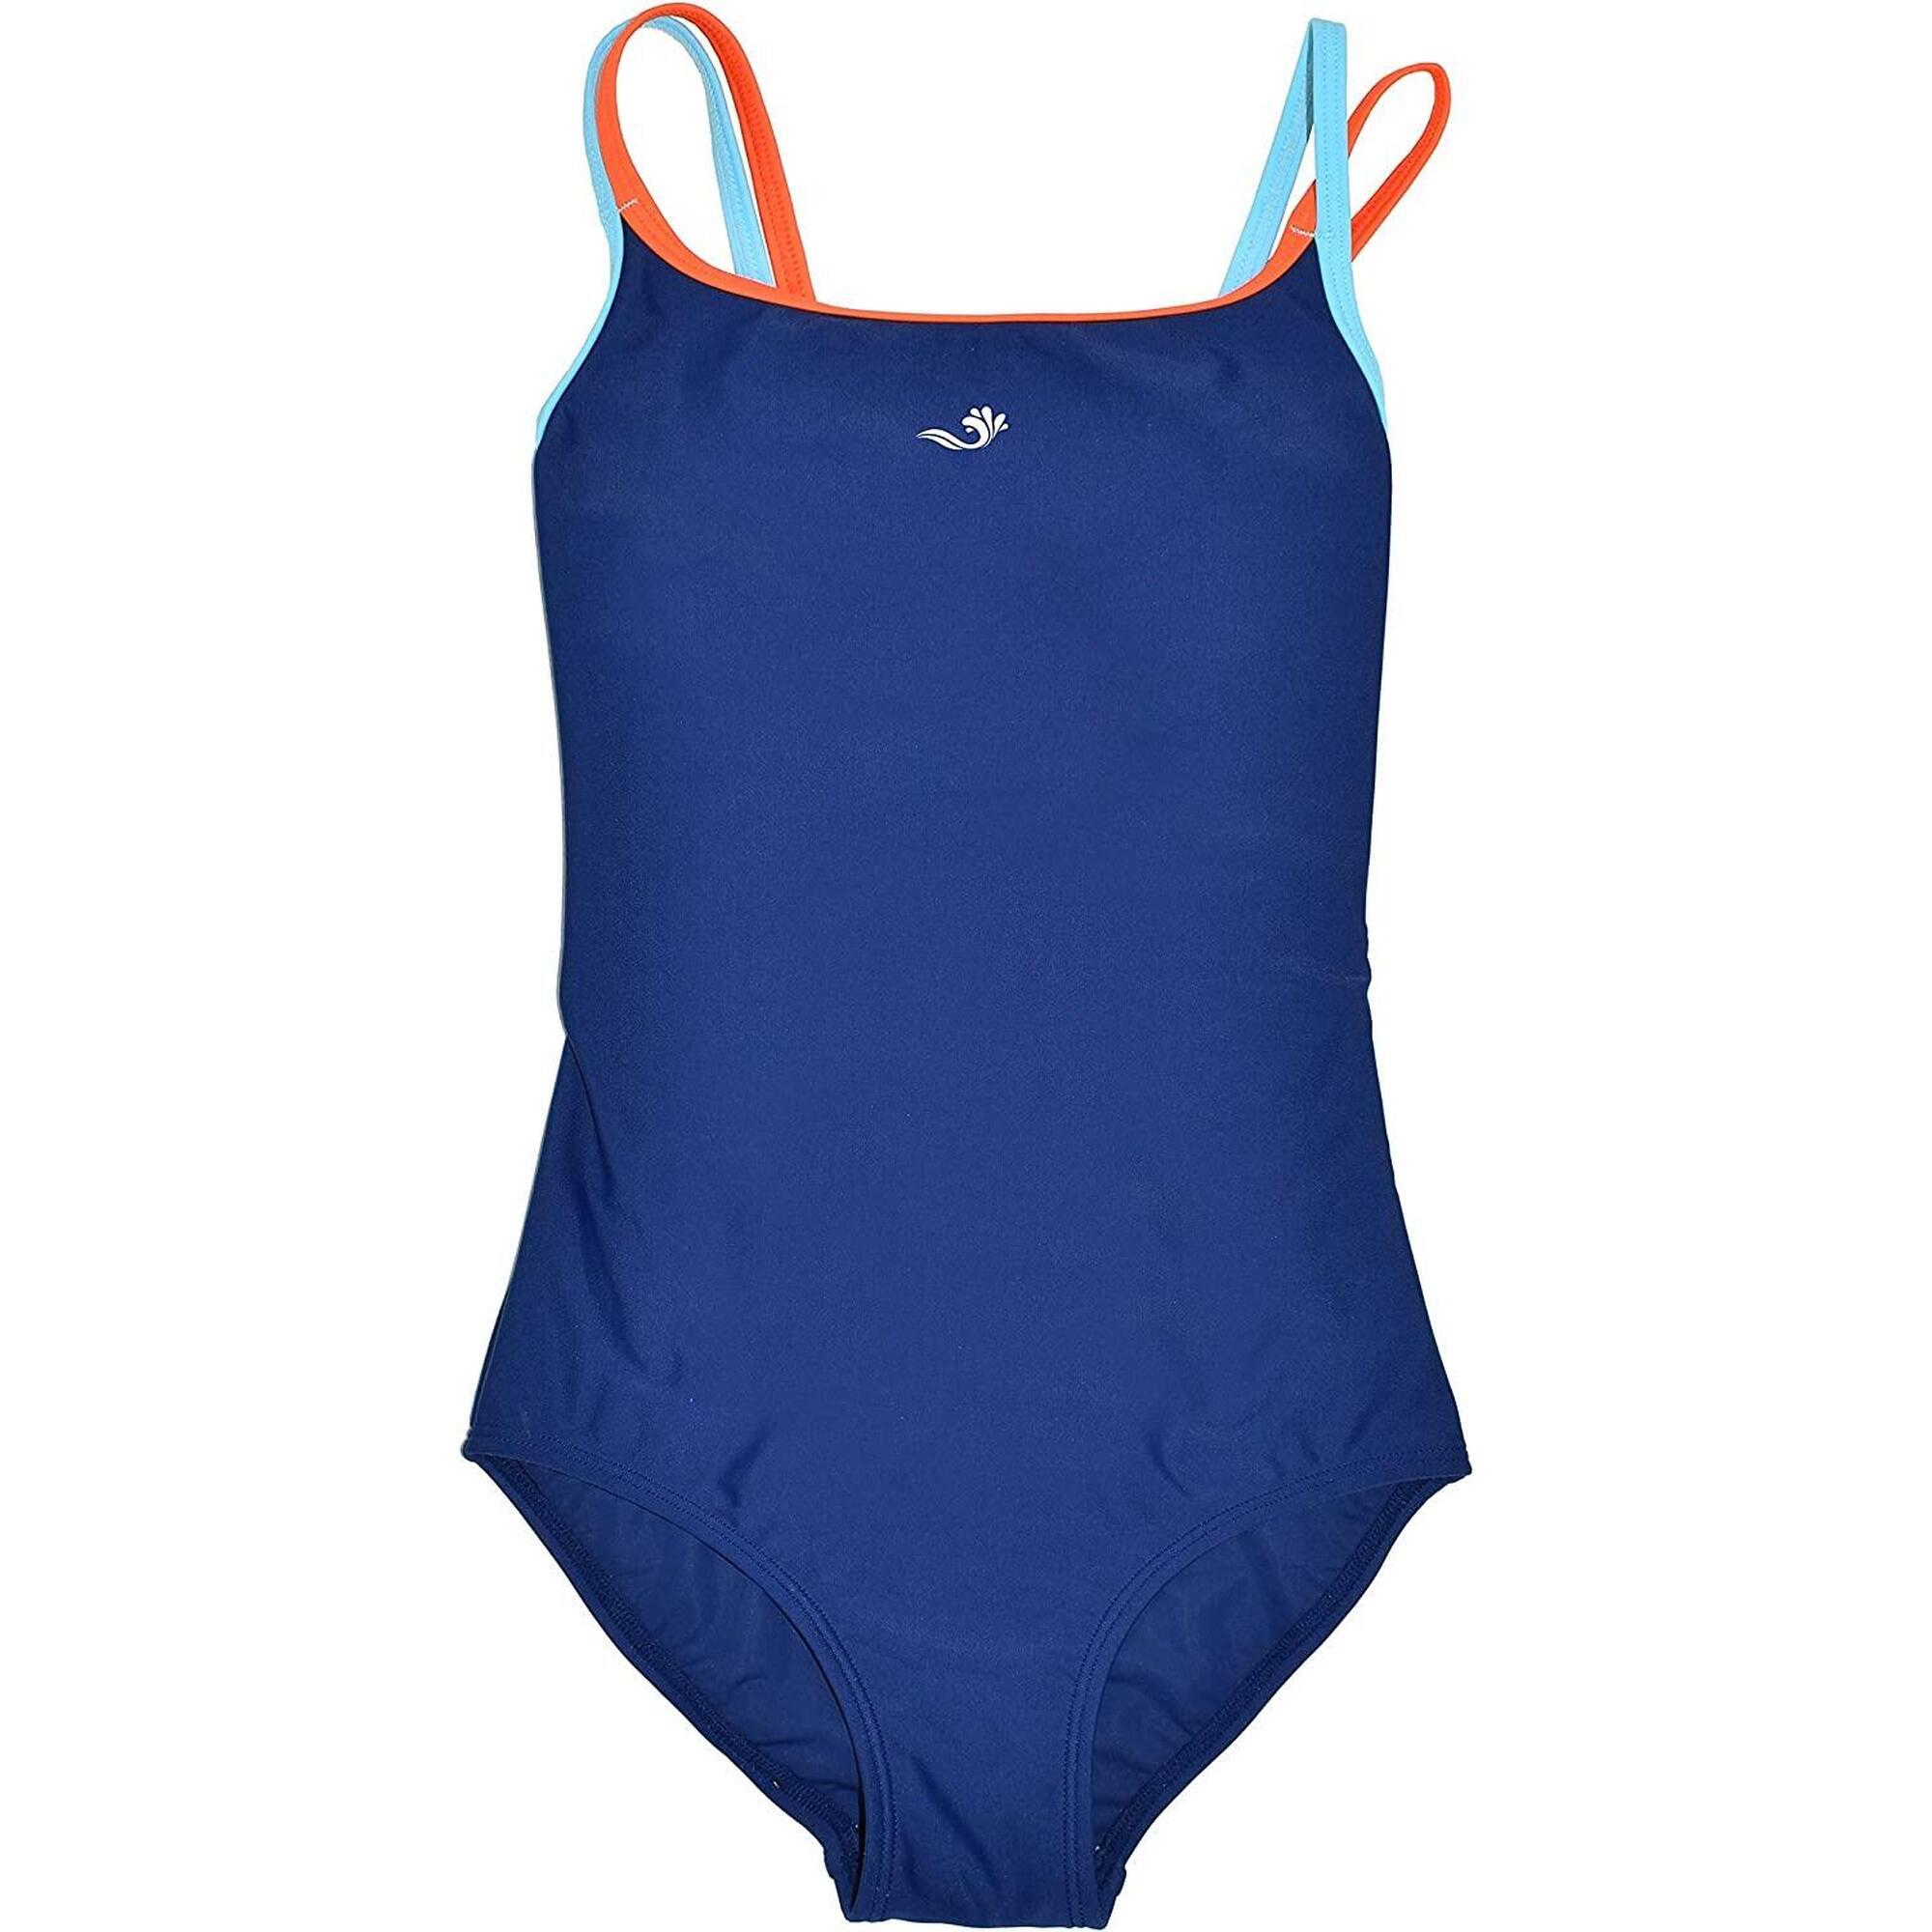 Girls SPORTS Swimming Costume - Navy